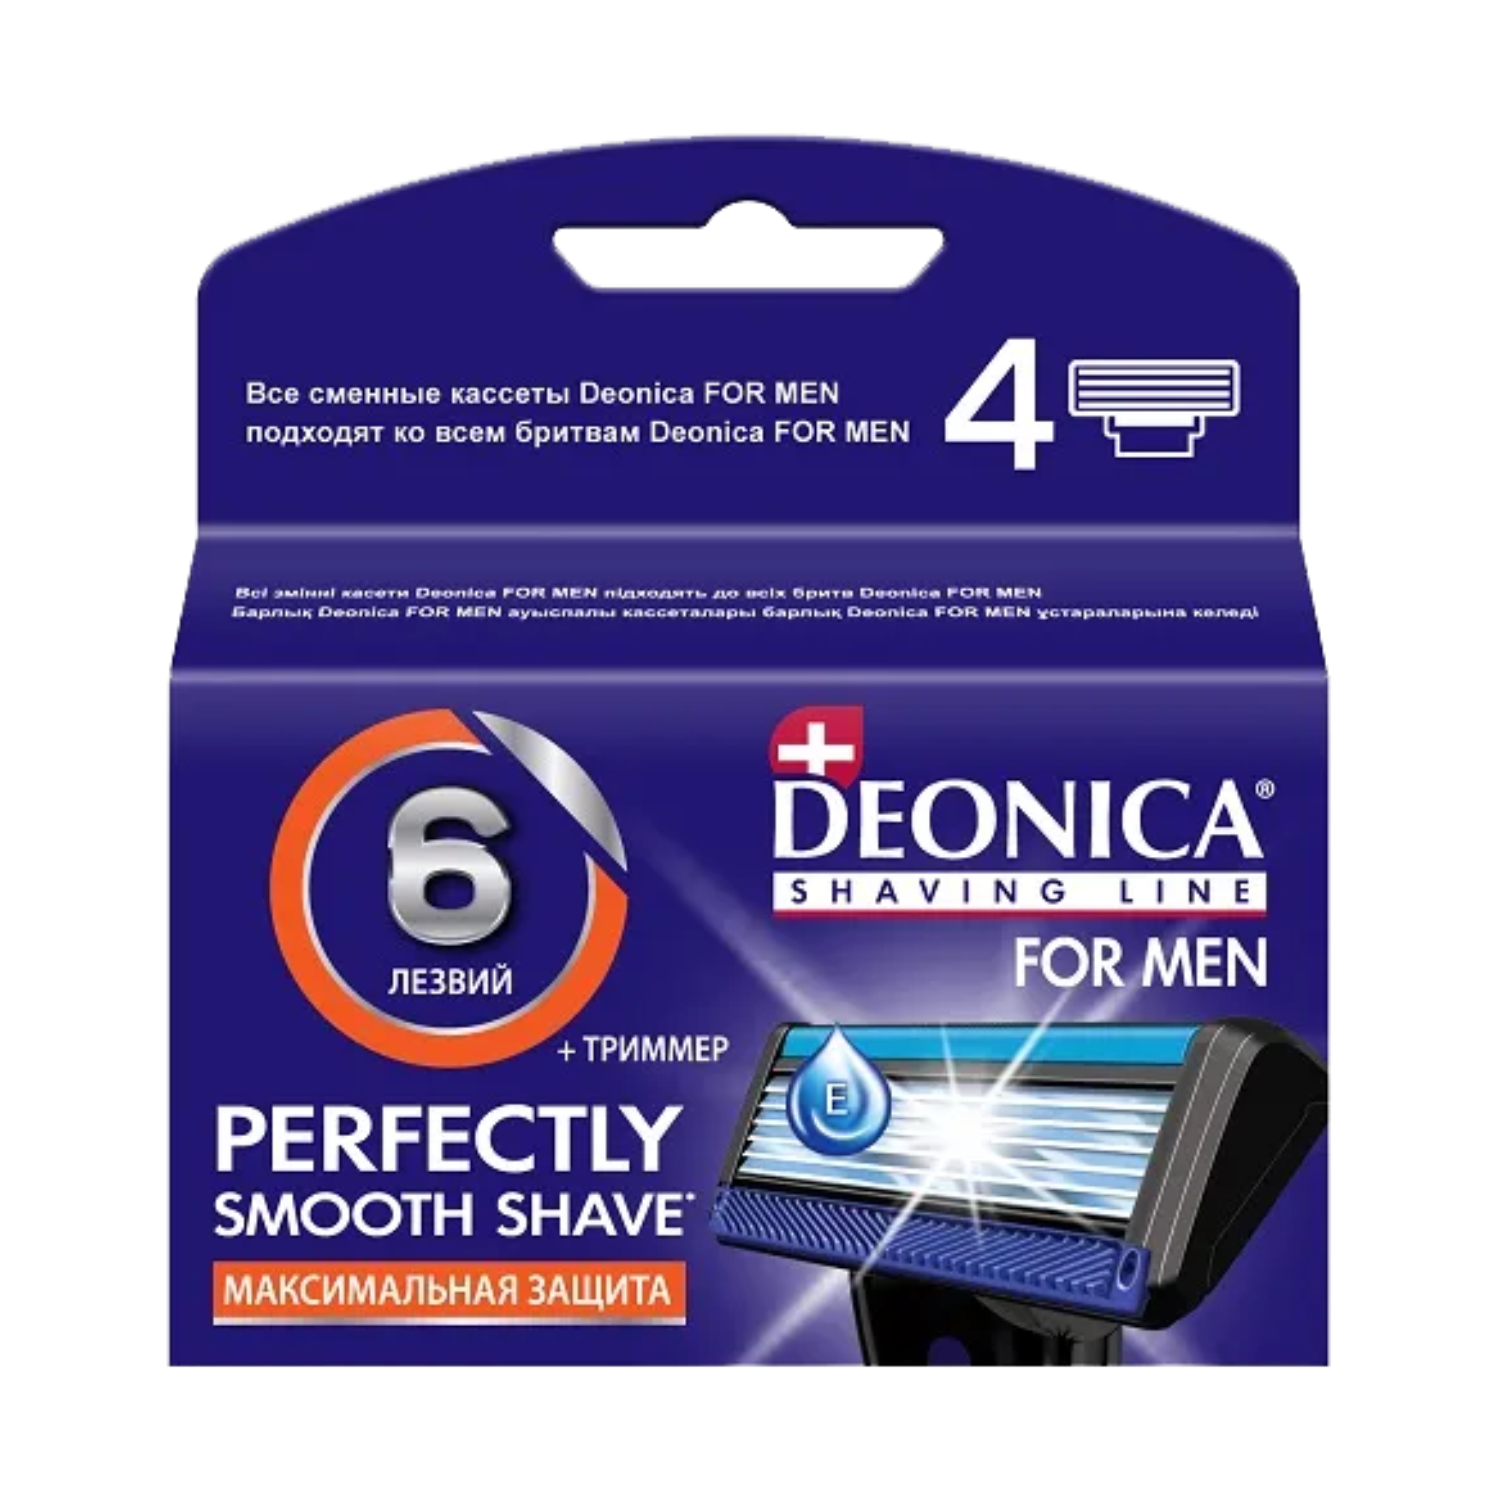 DEONICA 6 лезвий FOR MEN Сменные кассеты для бритья, 4 шт,